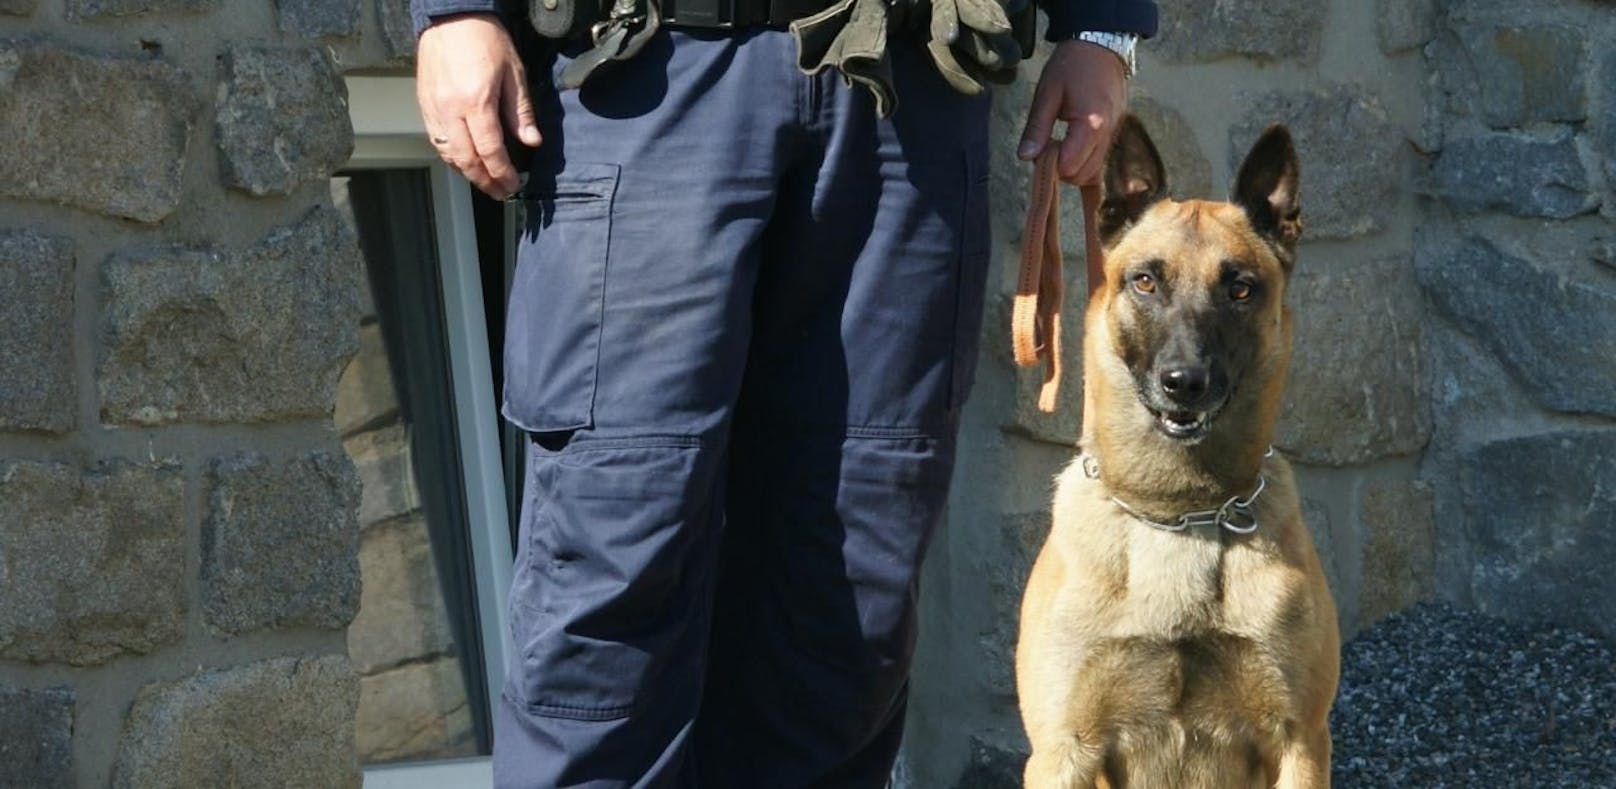 Polizeihund "Franky" schnappt Einbrecher